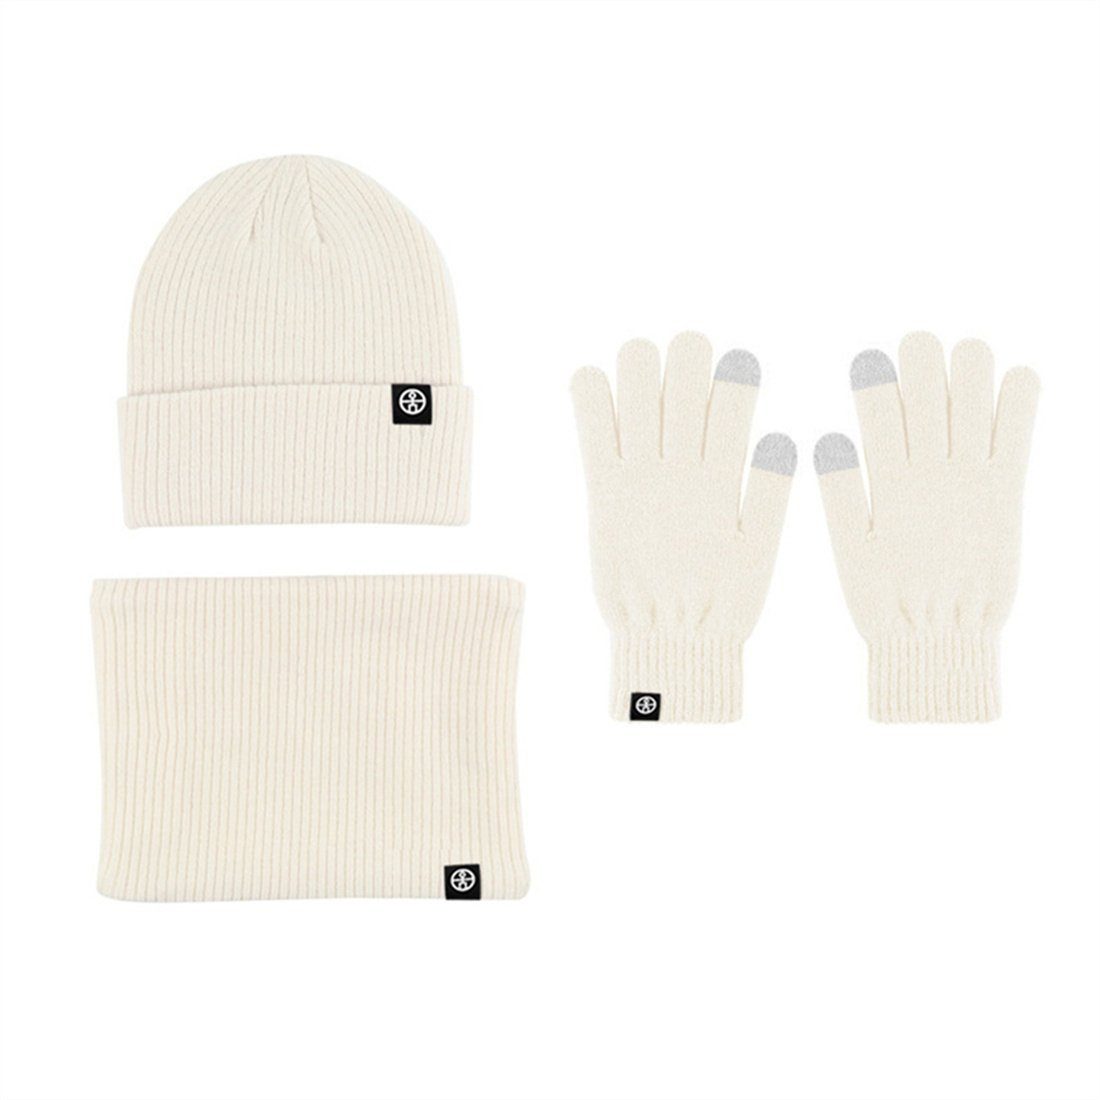 Unisex Winter + Schal Strickmütze Beige Strickmütze Set, DÖRÖY Warmth + 3 Piece Handschuhe